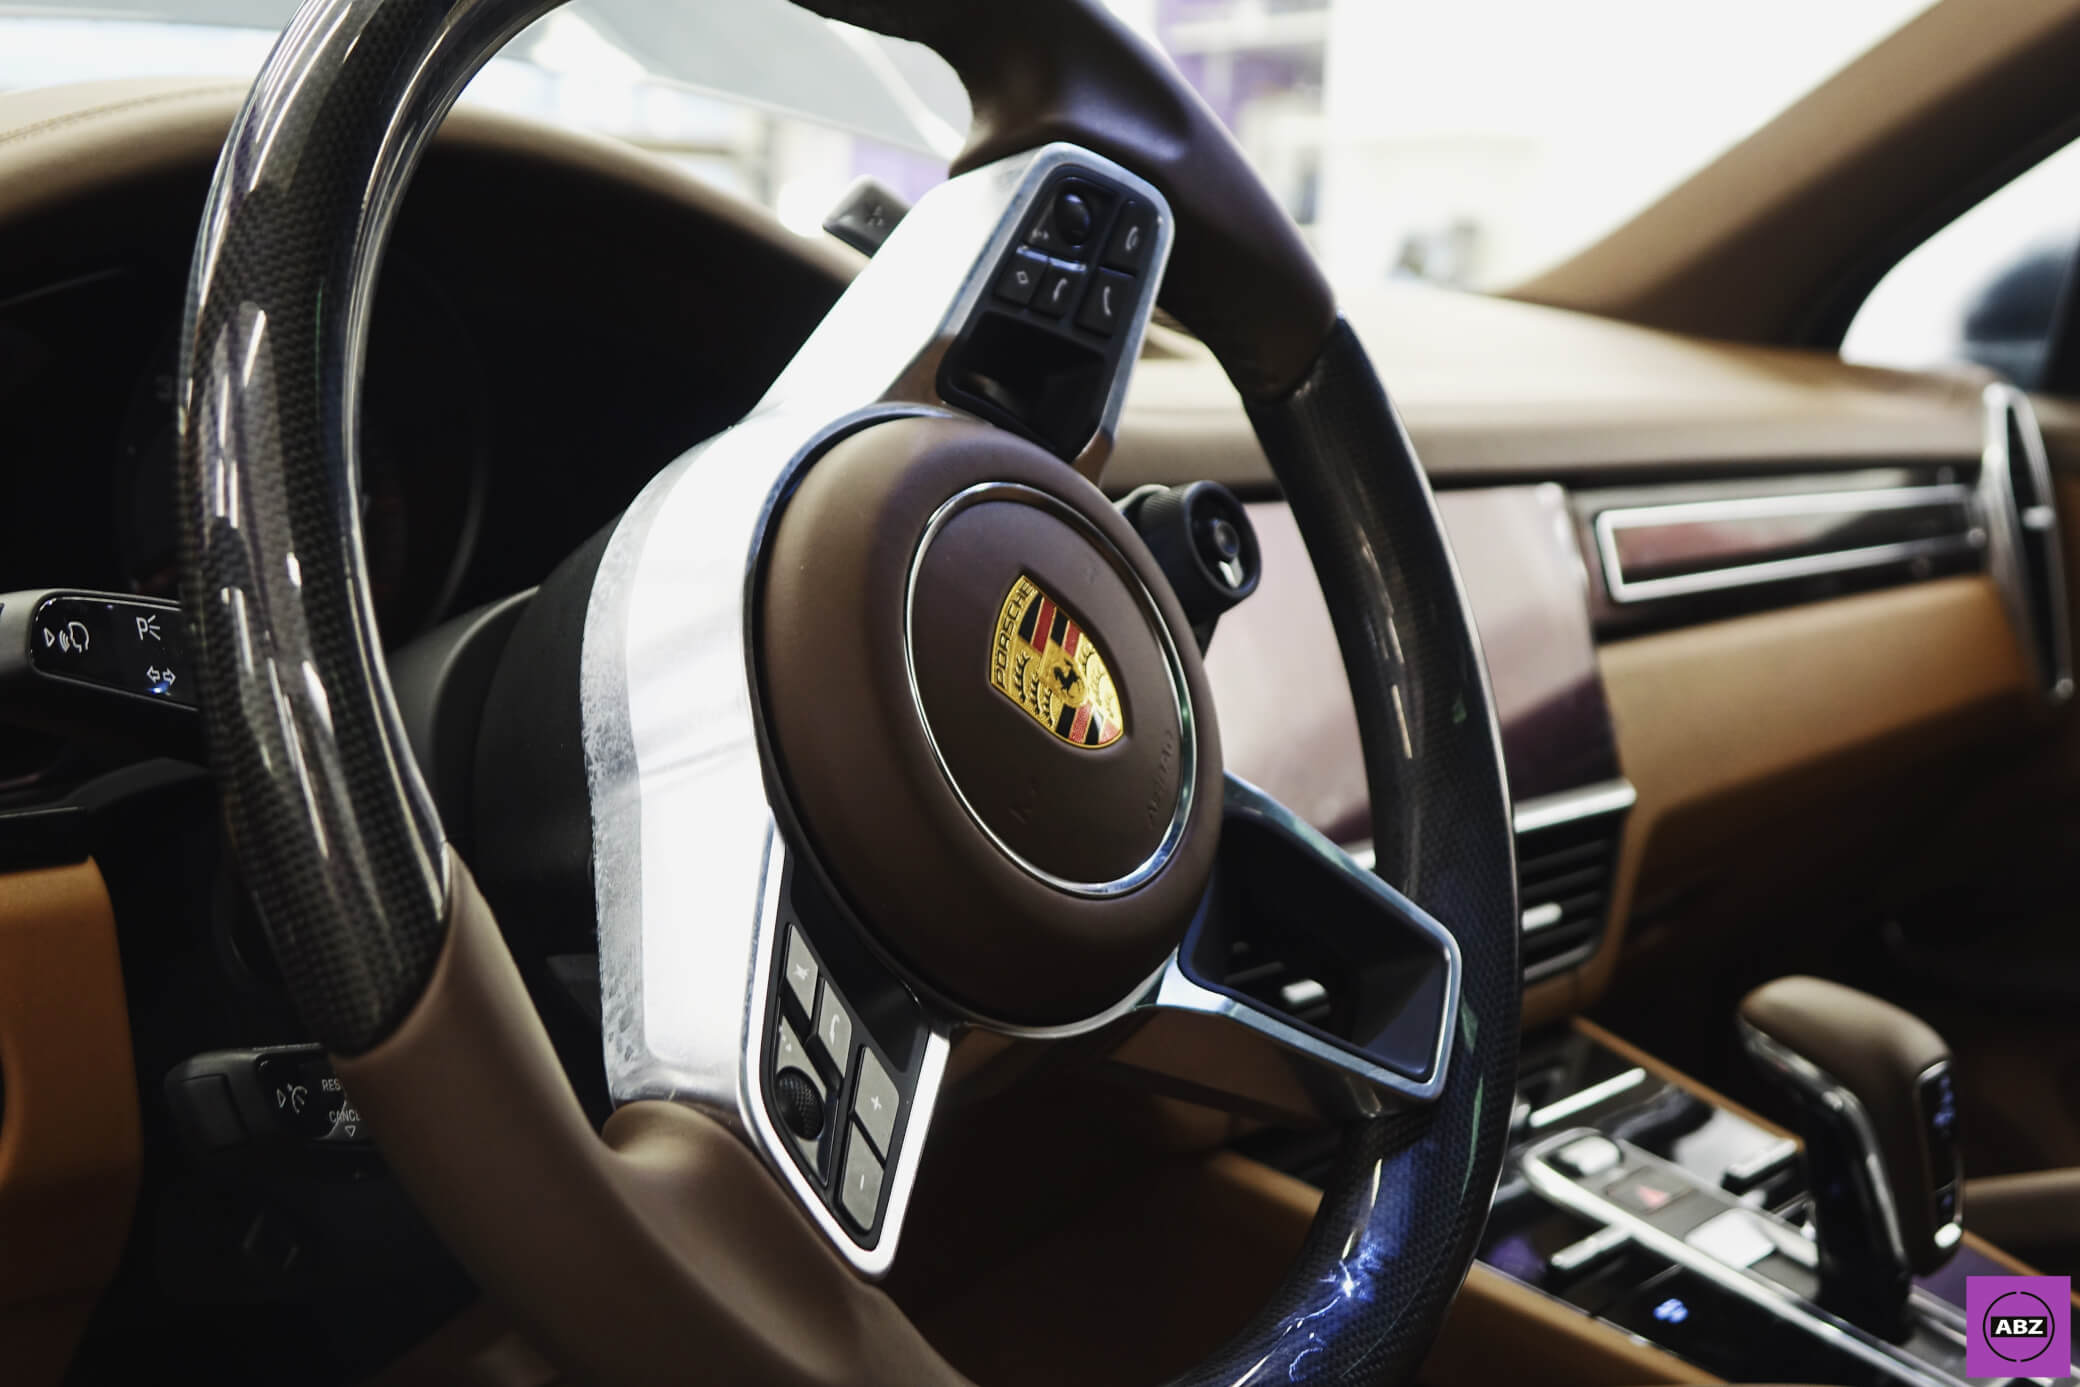 Фото Лайфхак для региональных клиентов или матовый Porsche Cayenne для Курска